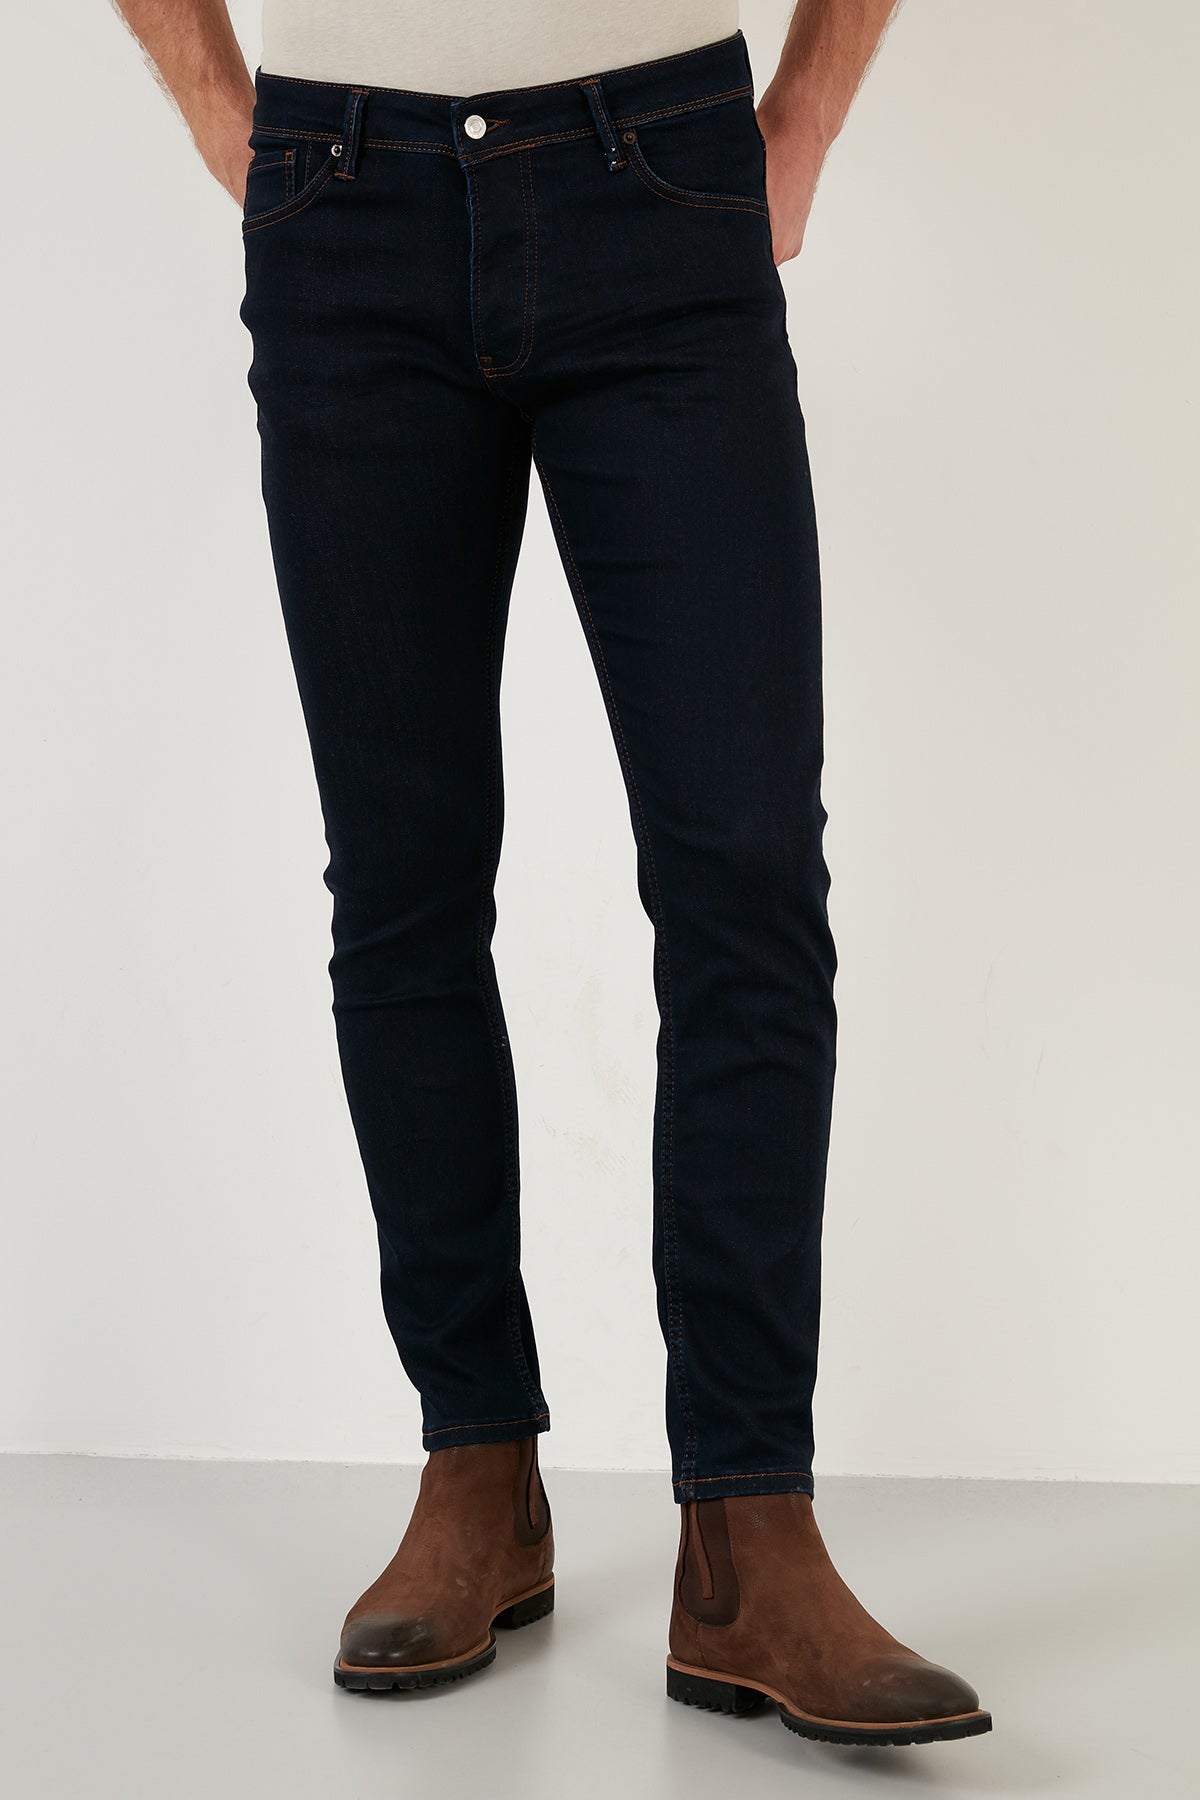 Buratti Pamuklu Normal Bel Slim Fit Dar Paça Jeans Erkek Kot Pantolon 1113F132NAPOLI LACİVERT